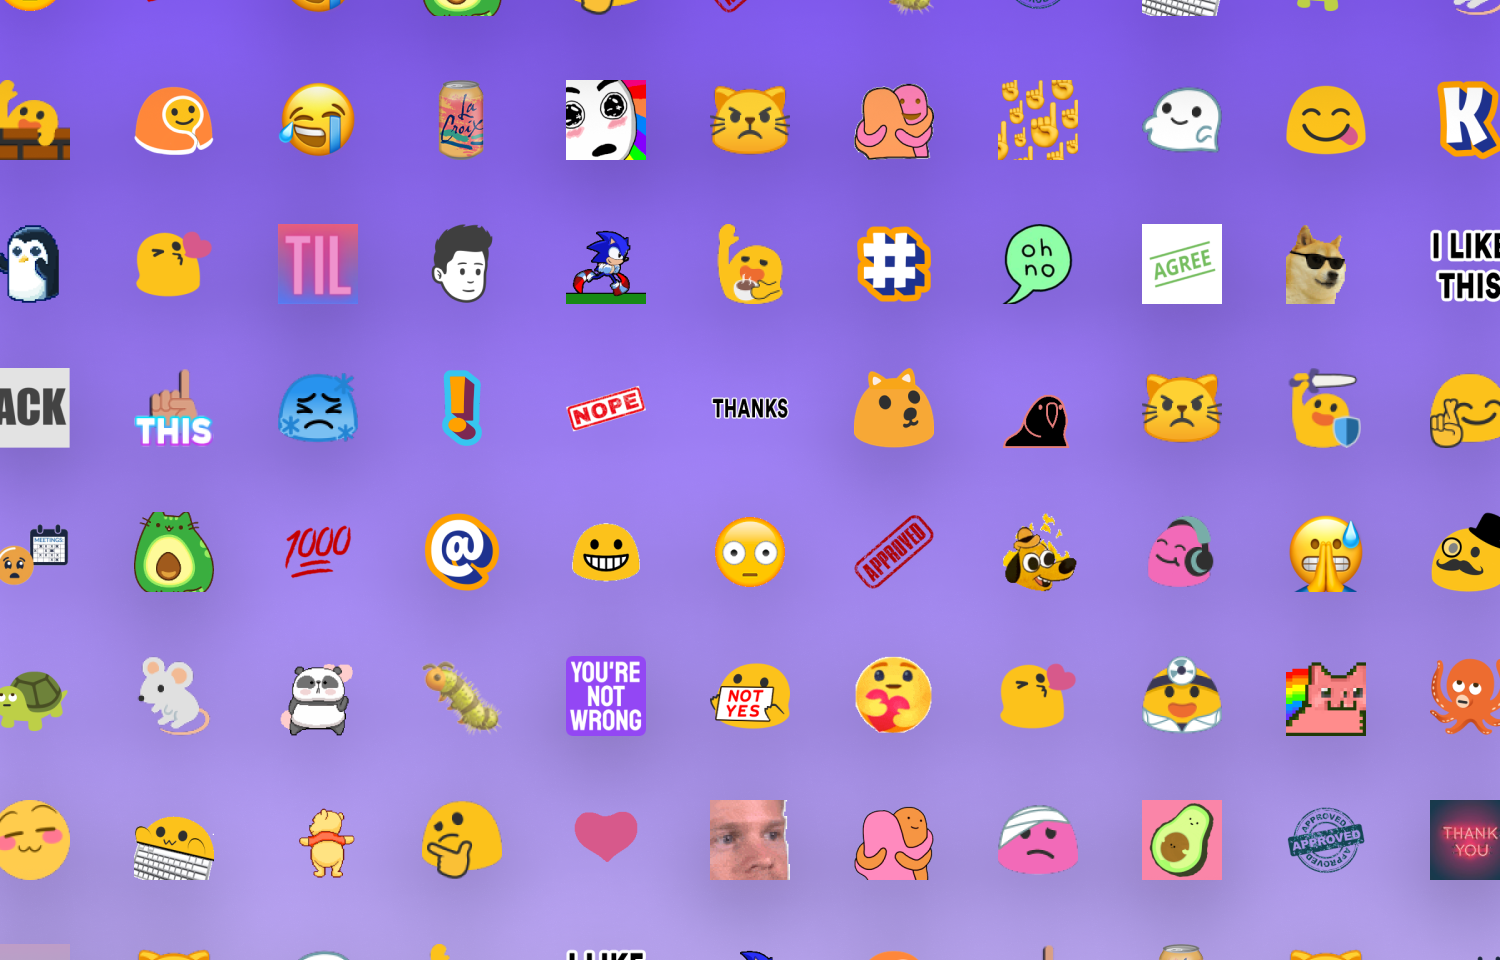 A grid of many emojis.